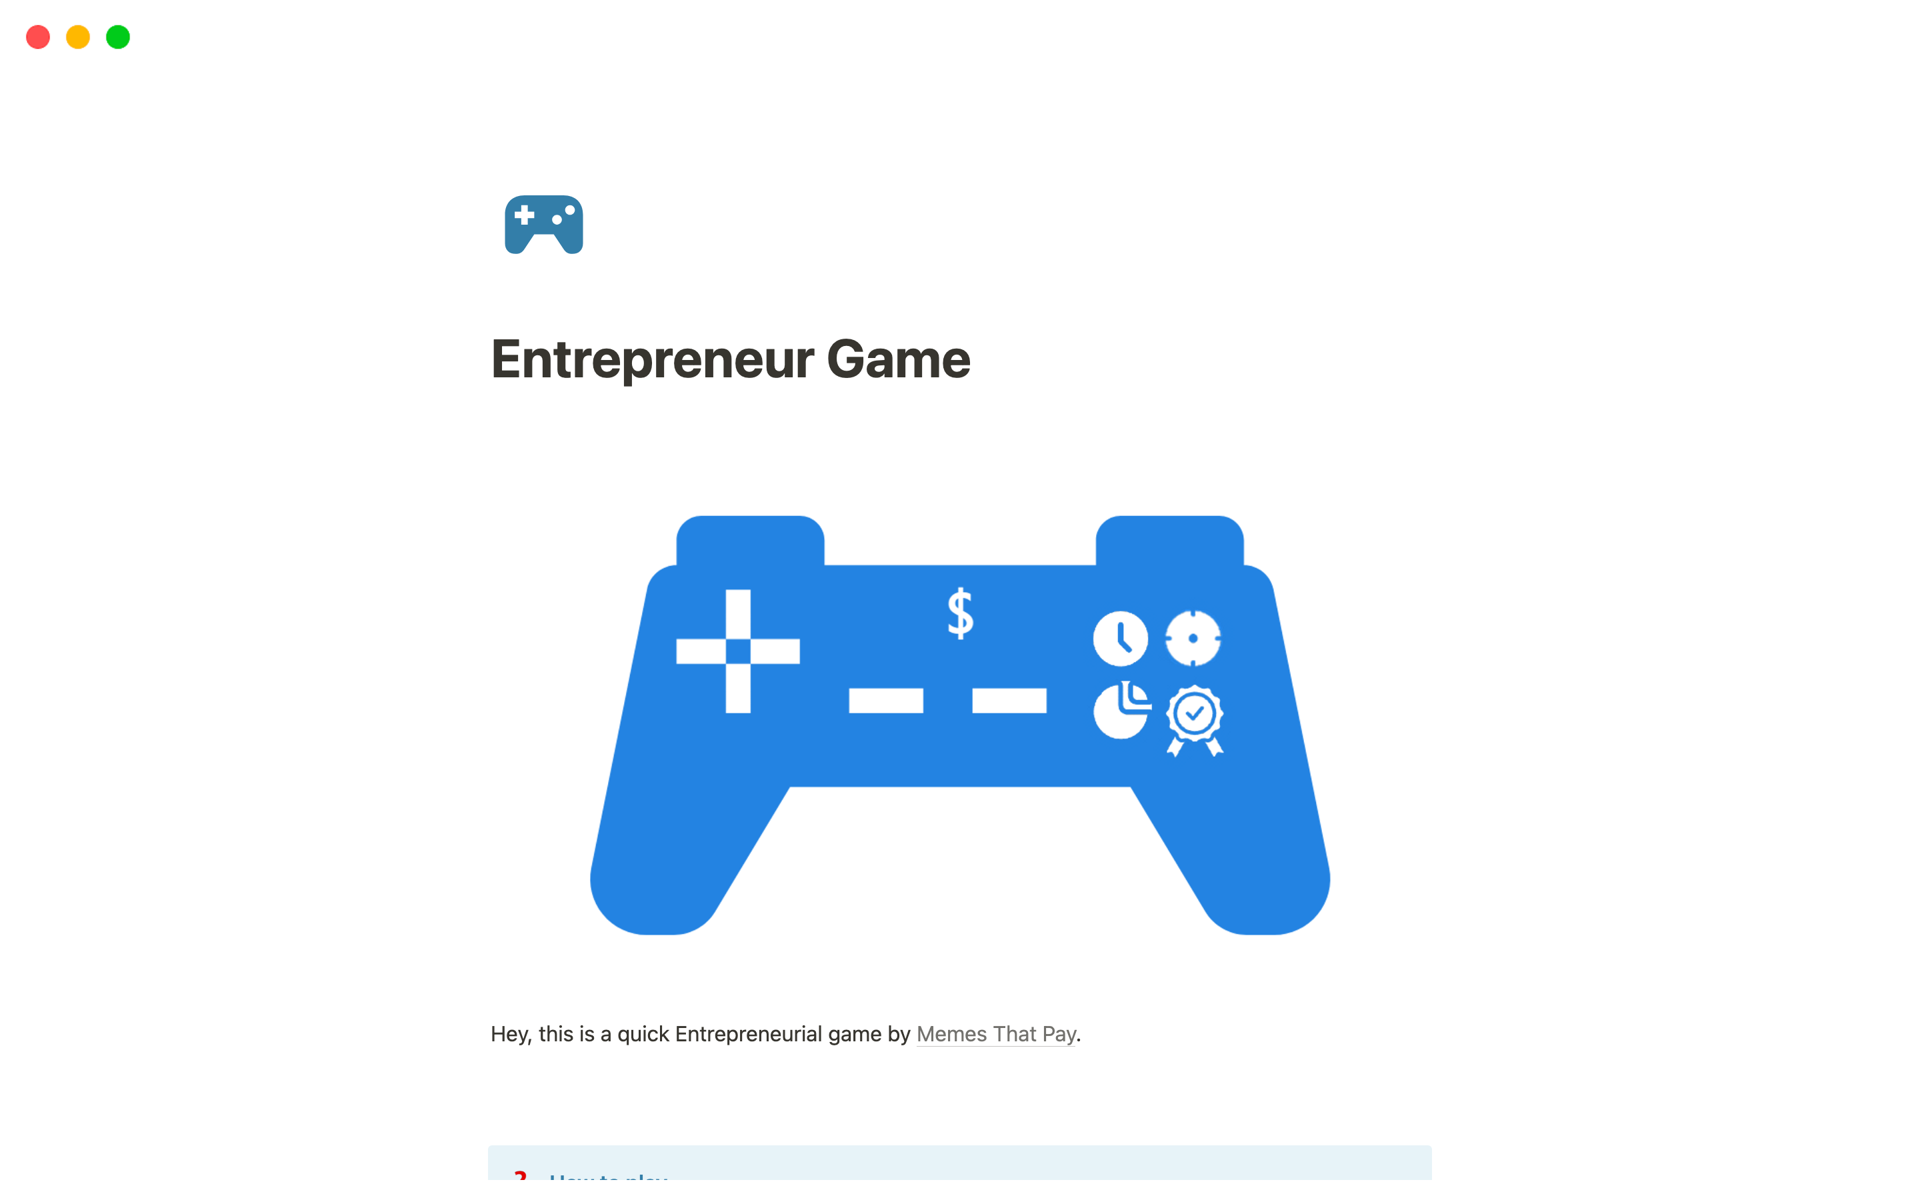 Vista previa de plantilla para Entrepreneur's Game